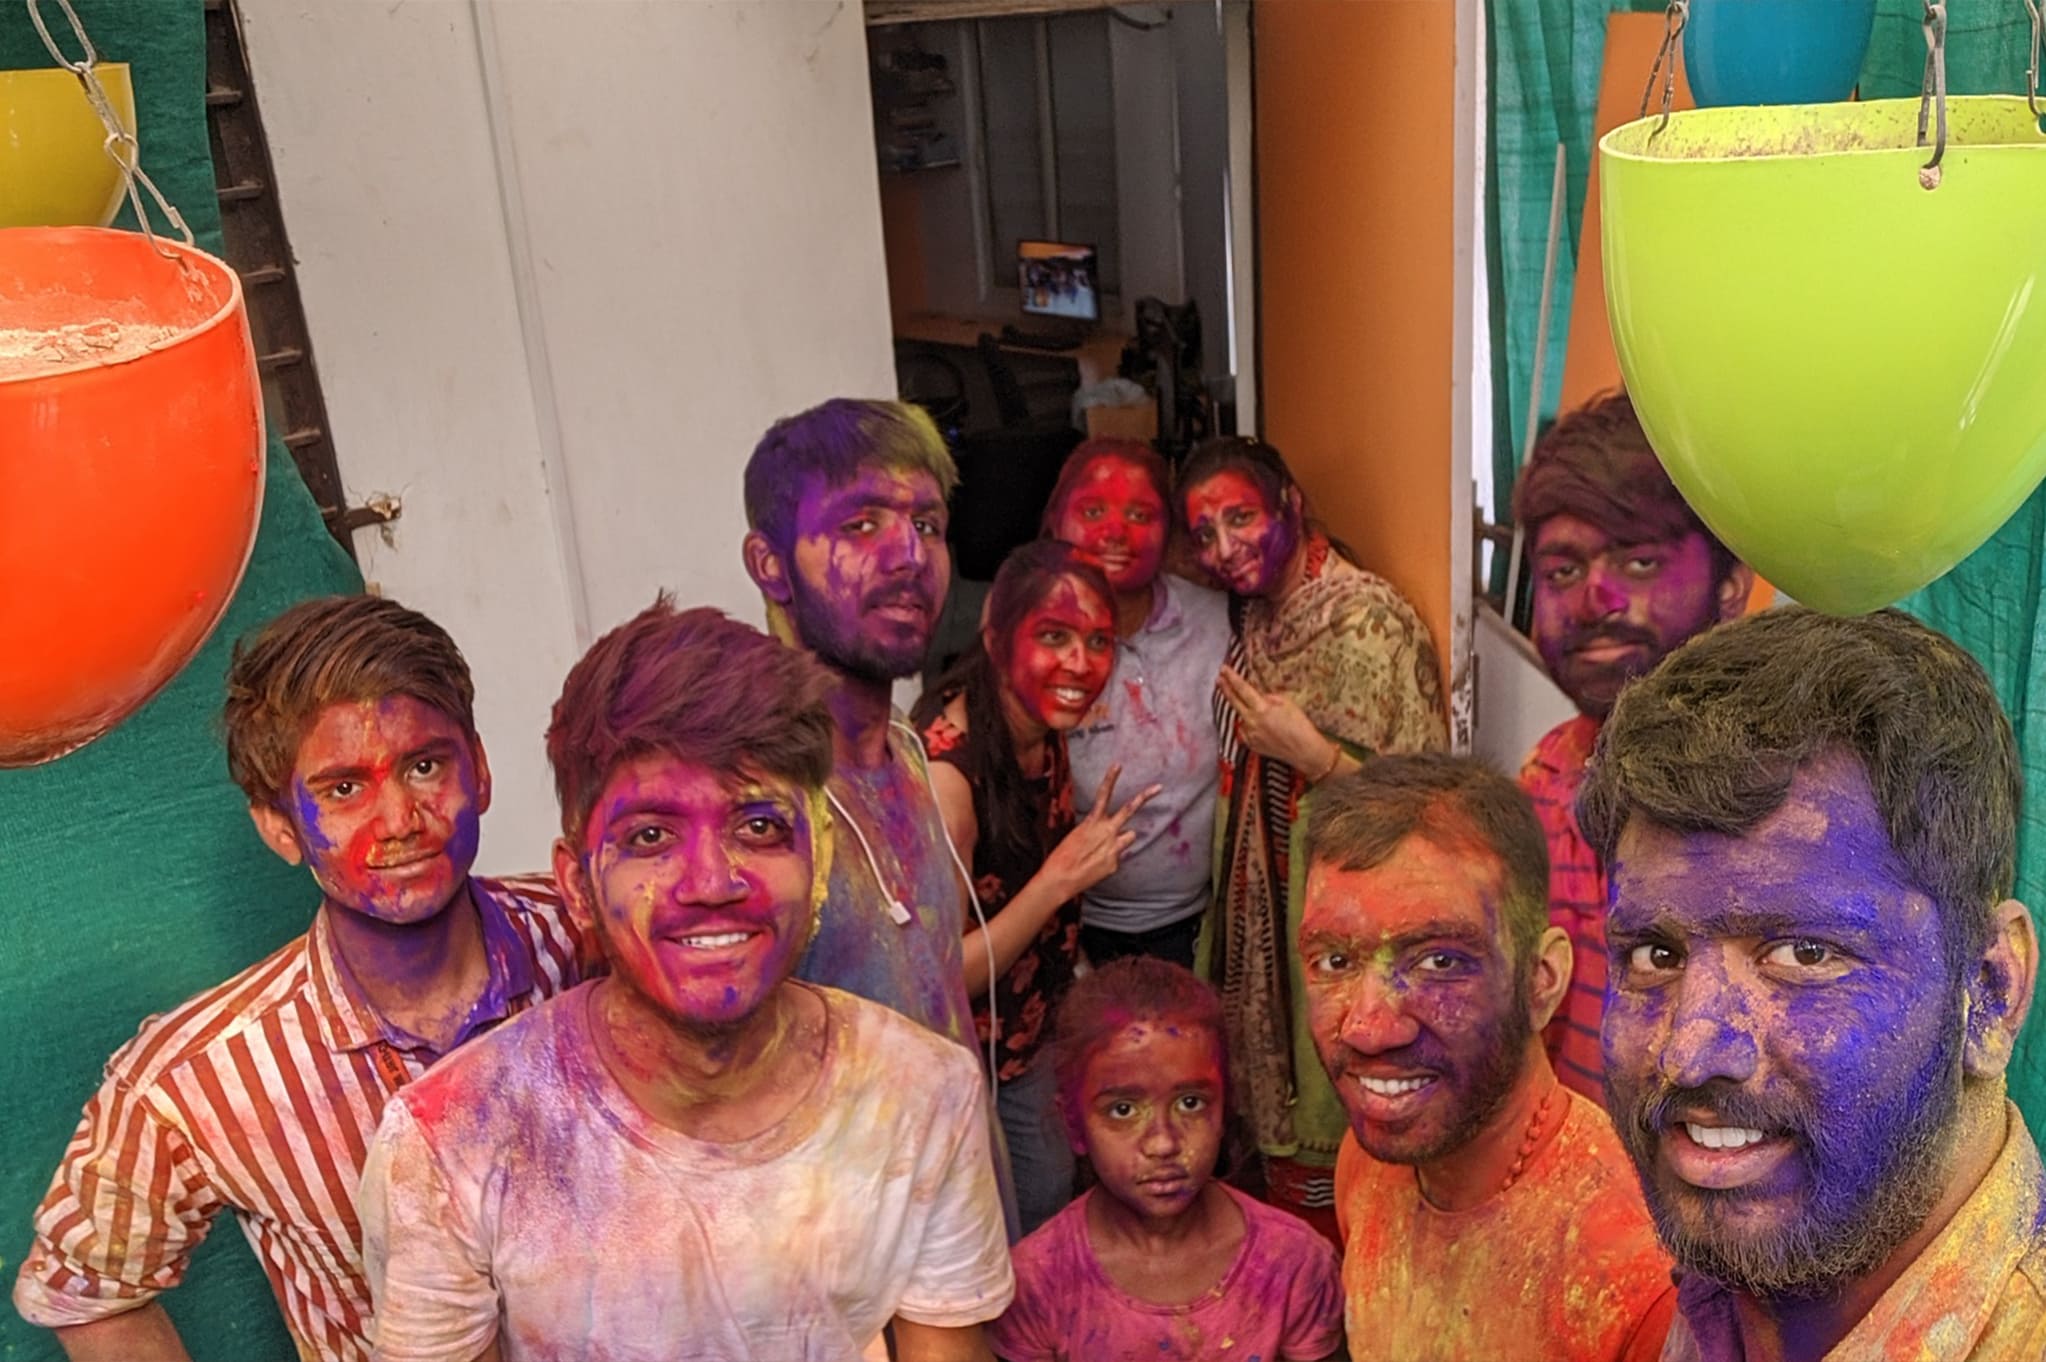 Colorful Holi Festival